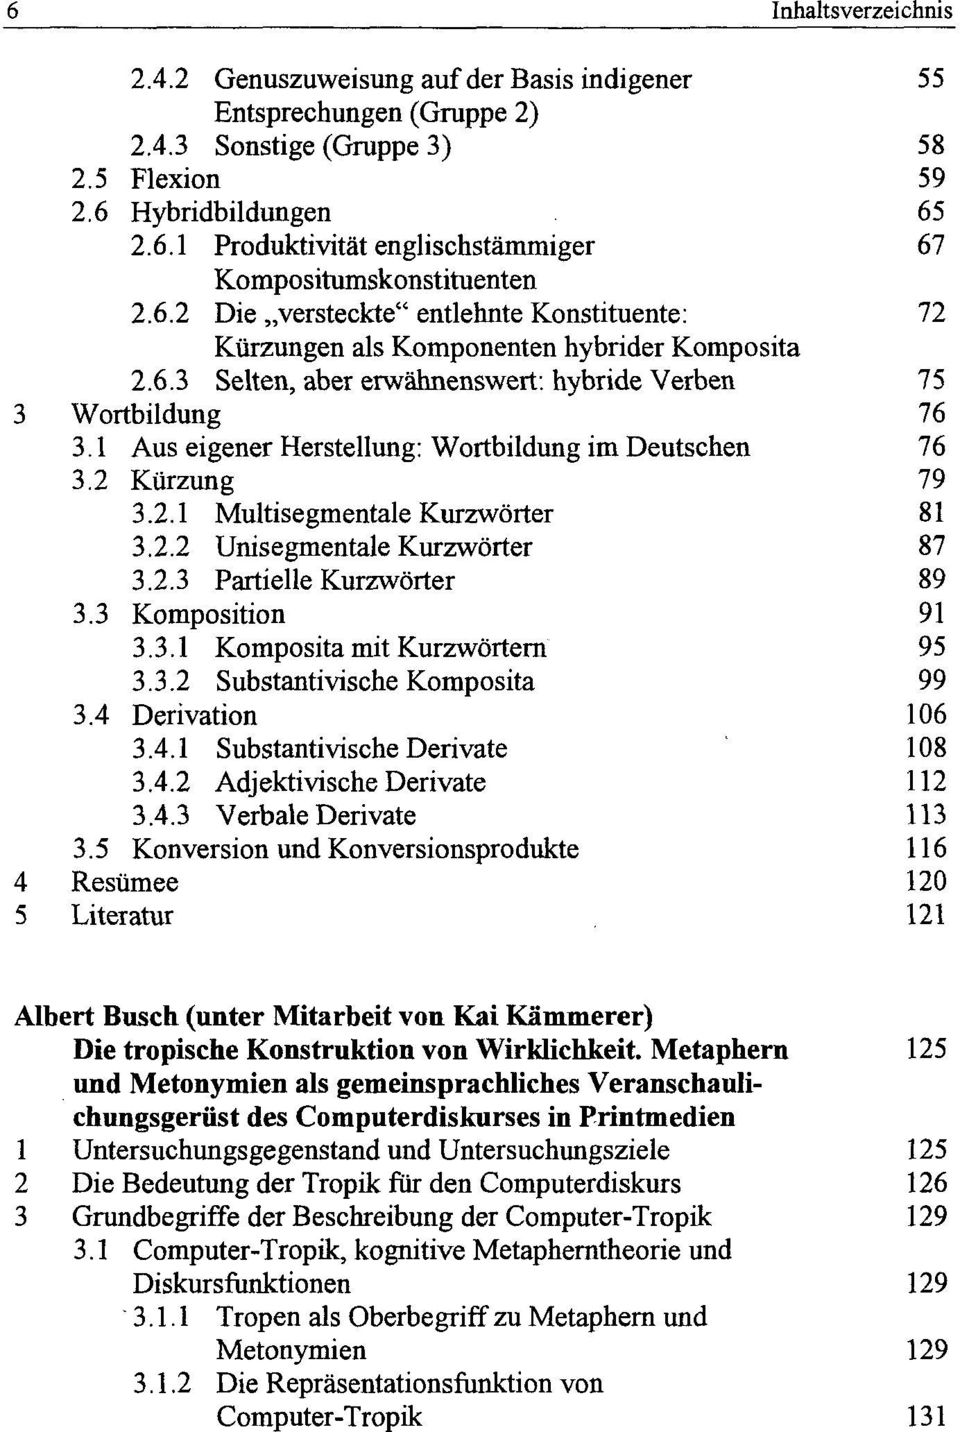 1 Aus eigener Herstellung: Wortbildung im Deutschen 3.2 Kürzung 3.2.1 Multisegmentale Kurzwörter 3.2.2 Unisegmentale Kurzwörter 3.2.3 Partielle Kurzwörter 3.3 Komposition 3.3.1 Komposita mit Kurzwörtern 3.